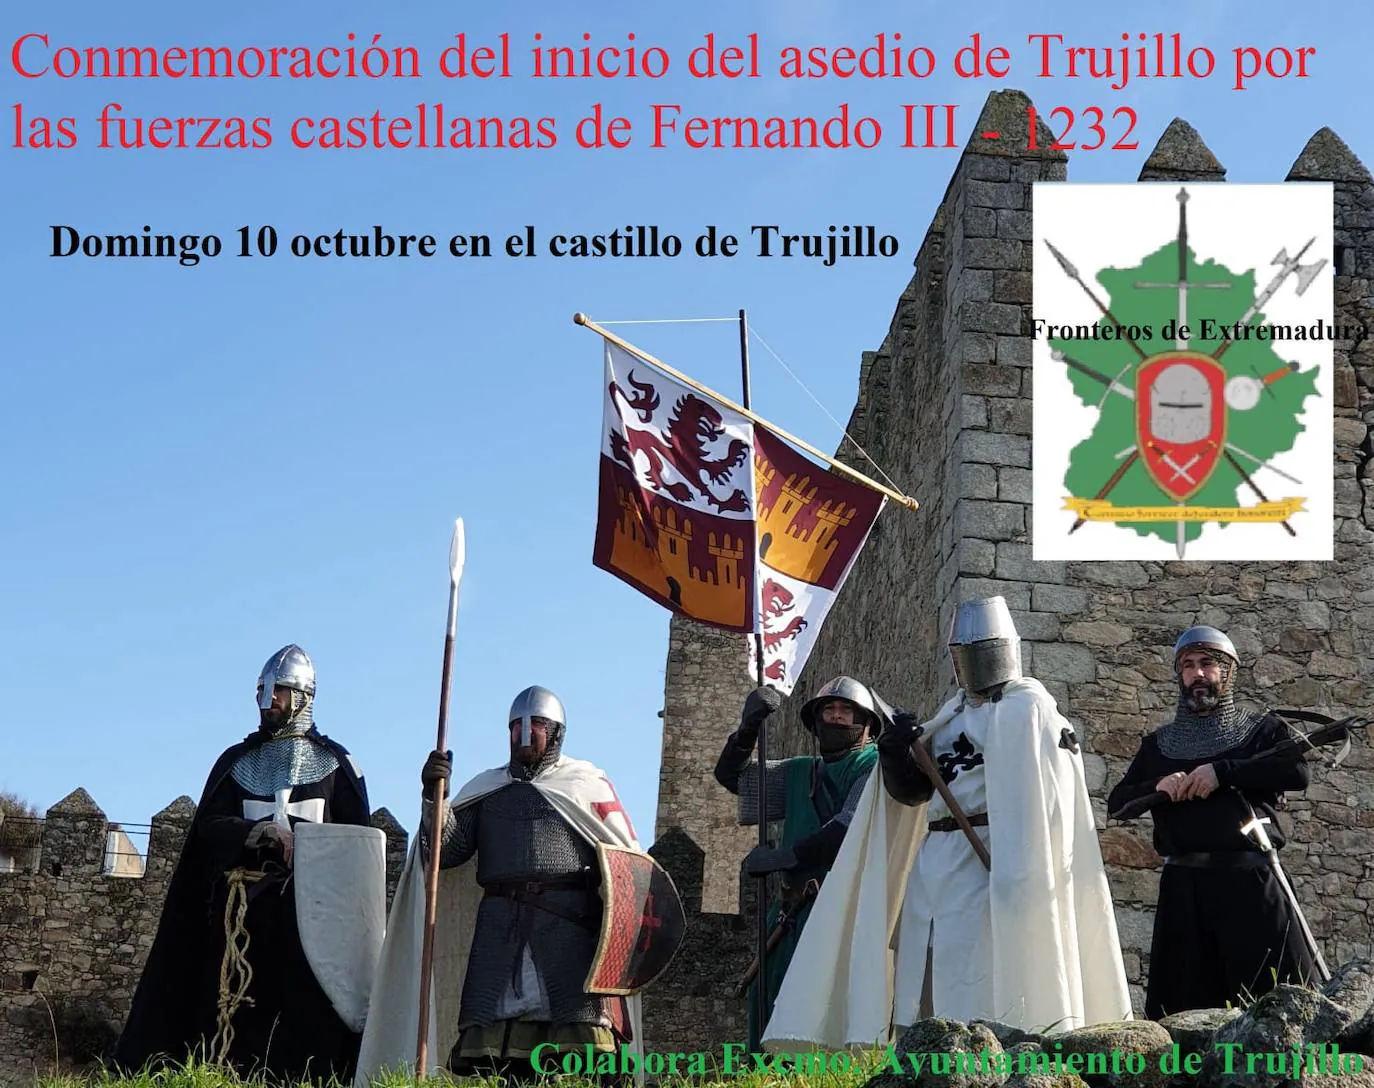 El grupo 'Fronteros de Extremadura' conmemorará el 10 de octubre el asedio a Trujillo